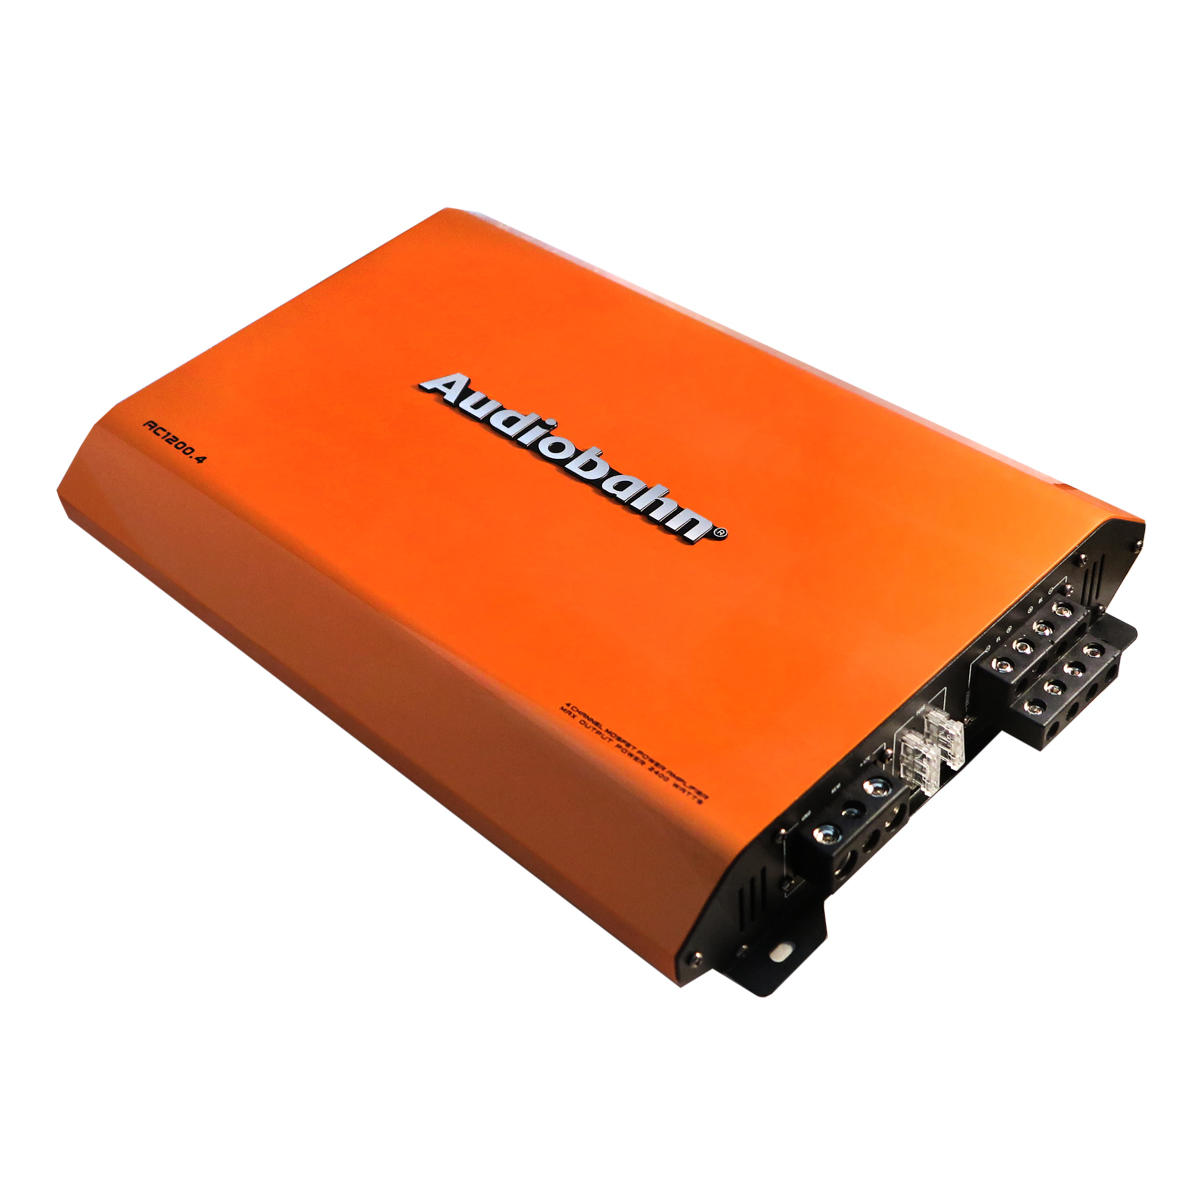 Amplificador Bluetooth 4 Canales Rojo CA-1212RD